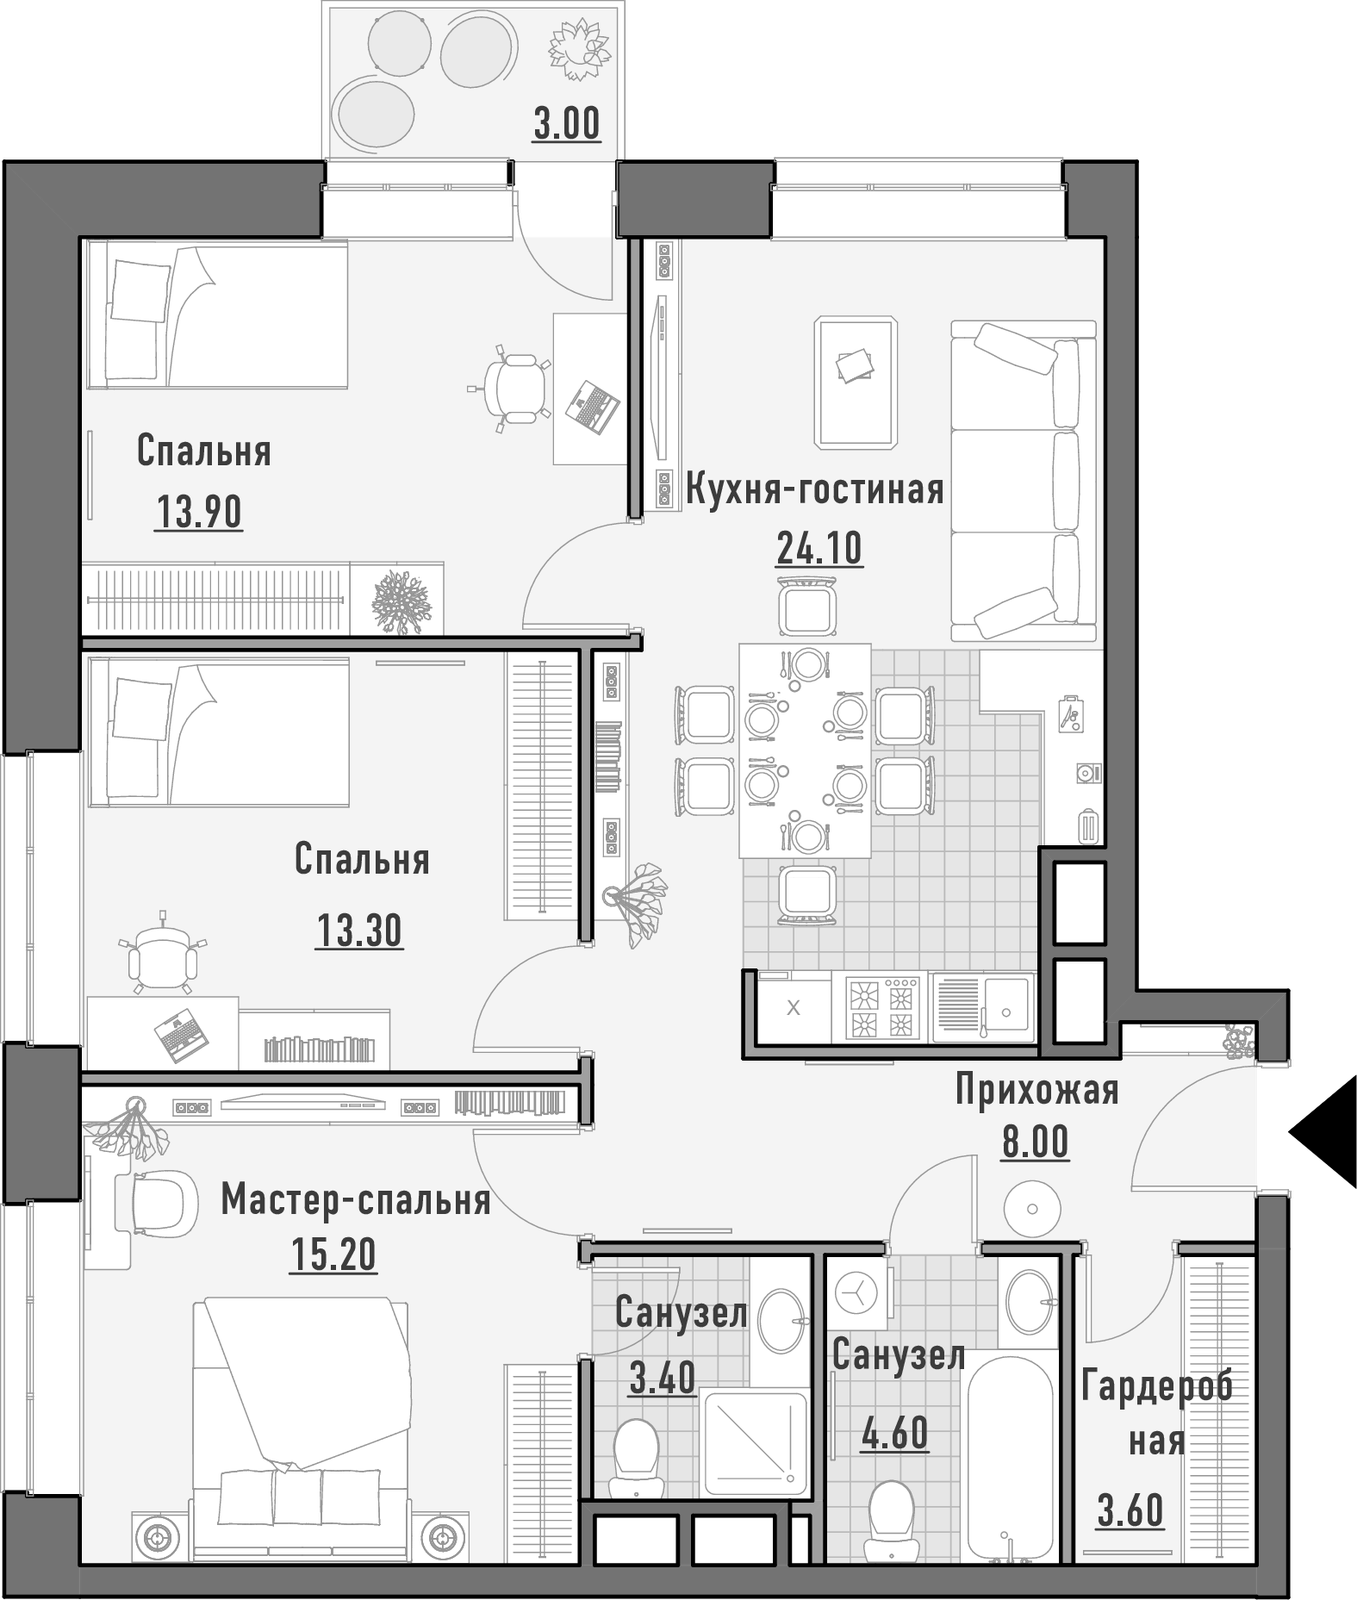 Продаётся 3-комнатная квартира в новостройке 86.0 кв.м. этаж 11/14 за 30 970 000 руб 